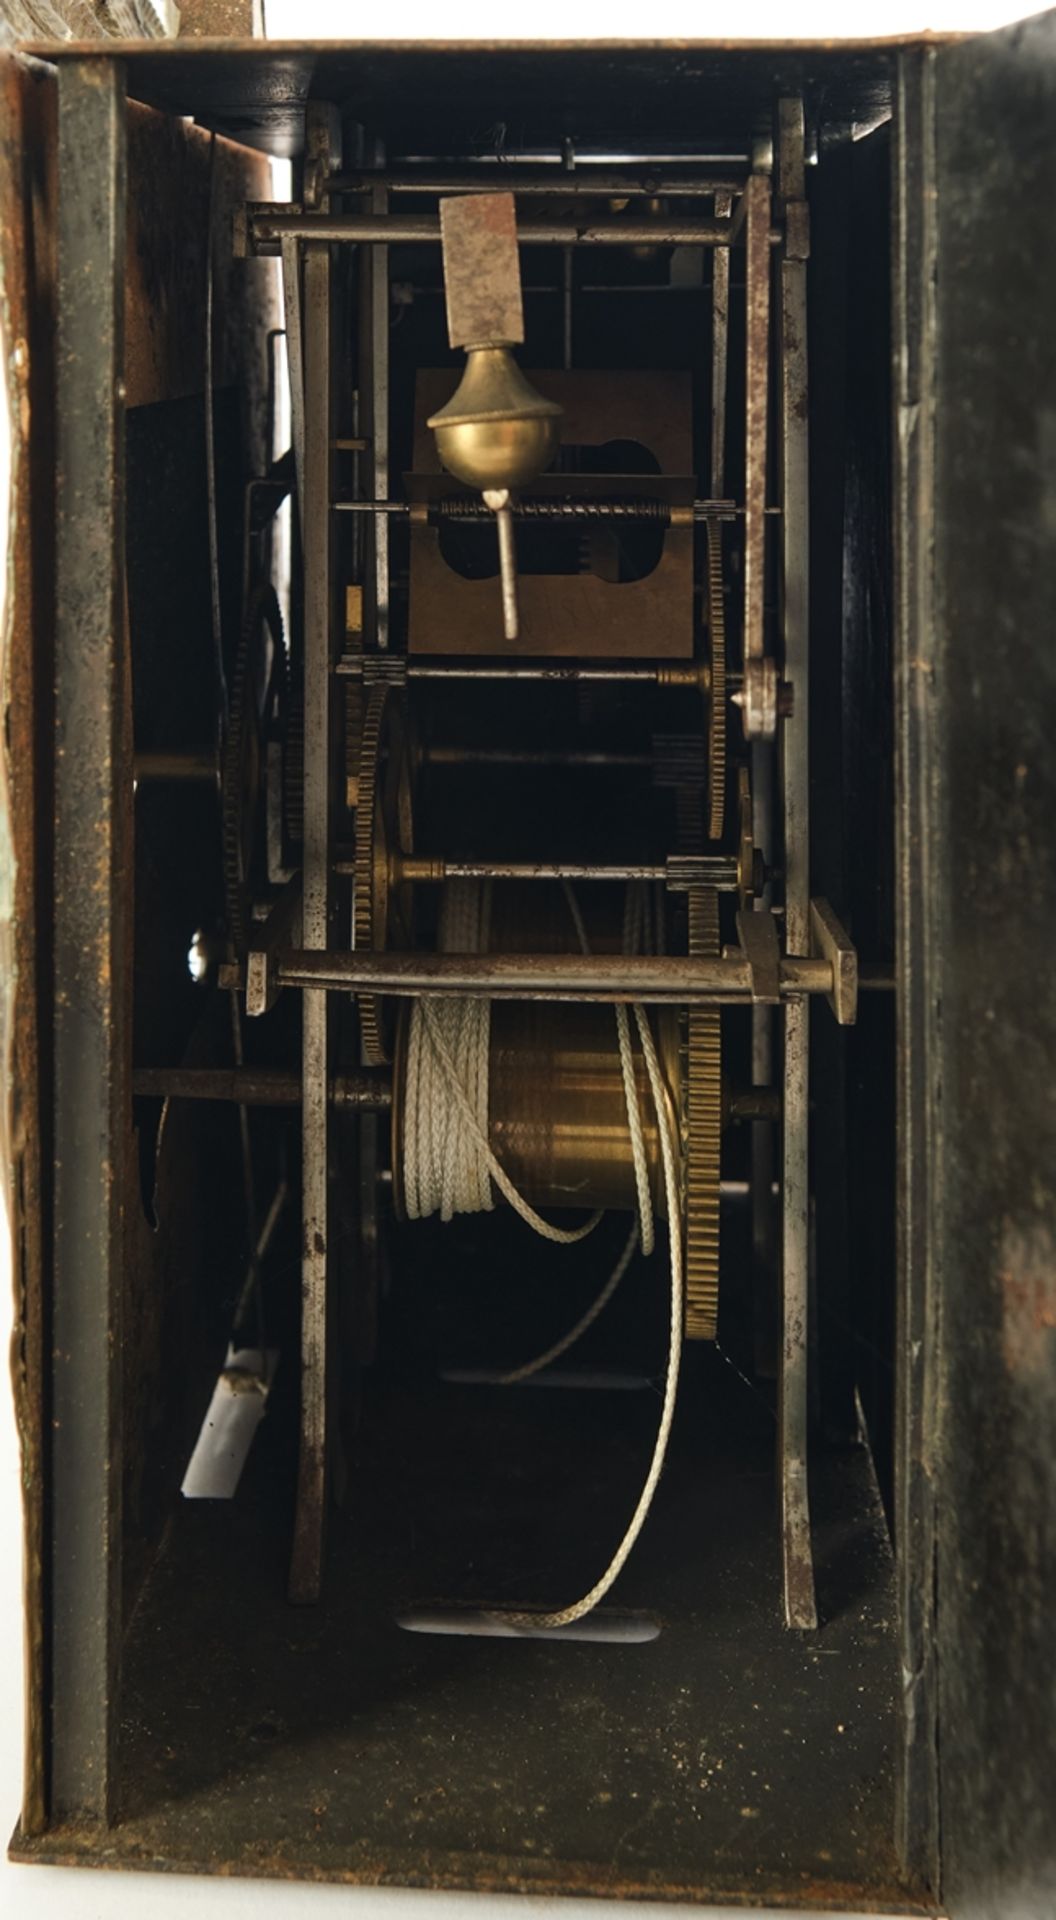 Comtoise, Frankreich, 19. Jh., Eisengehäuse, schauseitig geprägtes Messingblech, weißes Emailziffer - Bild 2 aus 2